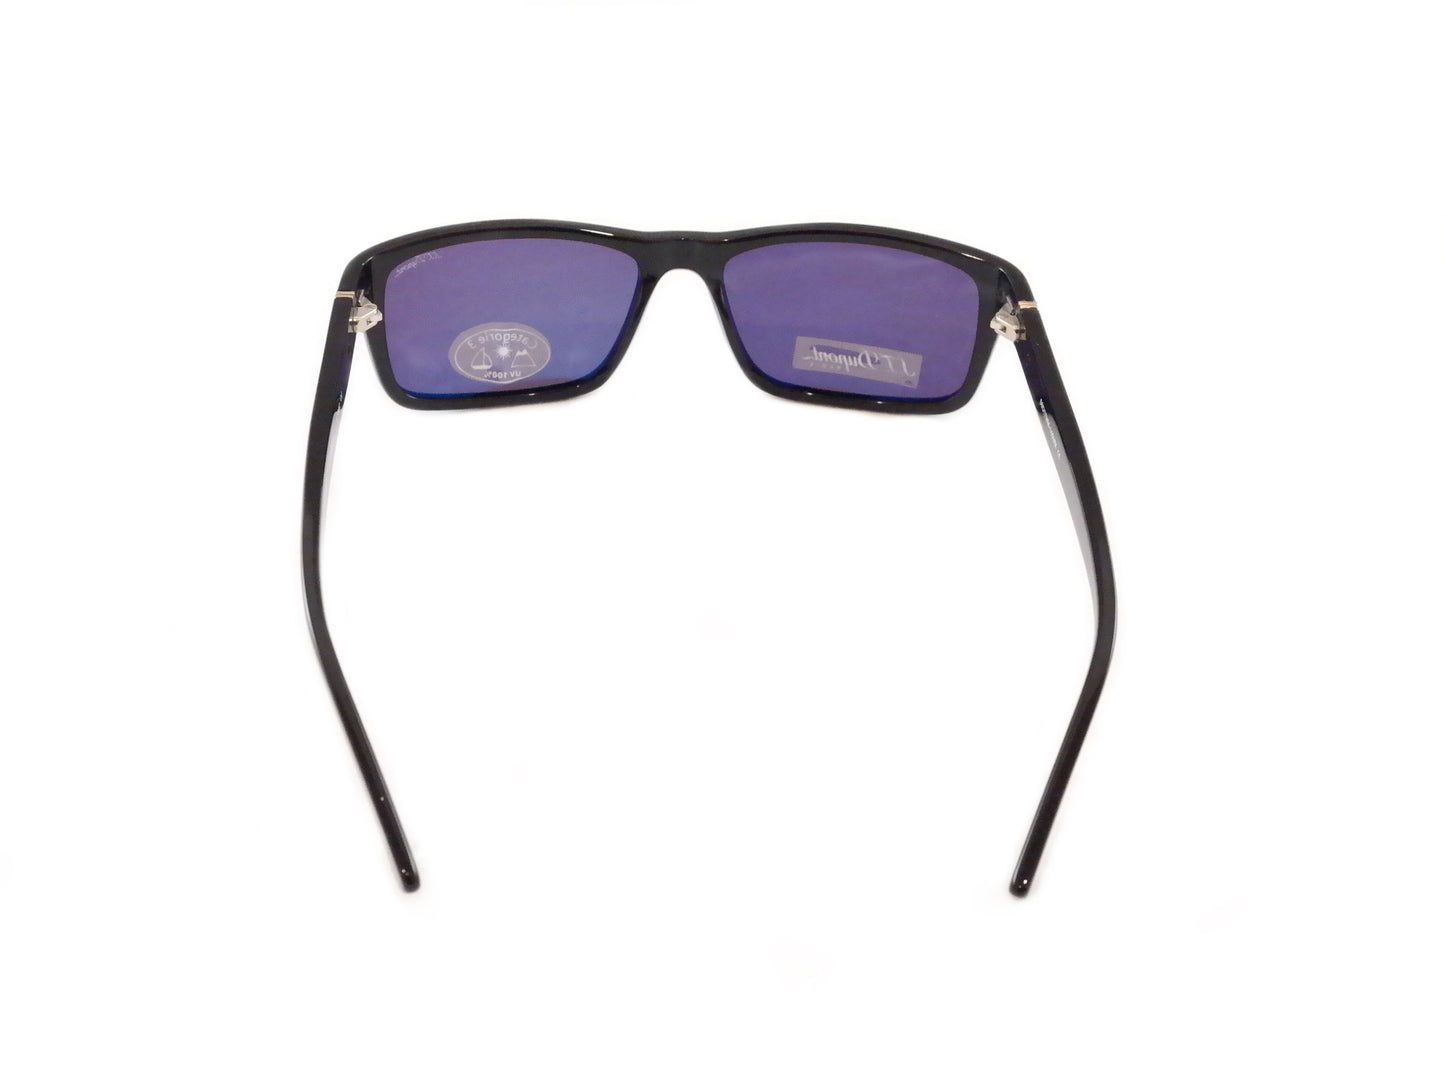 S. T. Dupont Sunglasses Italy ST002 Plastic 100% UV Category 3 Lenses 56-17-140 - Frame Bay